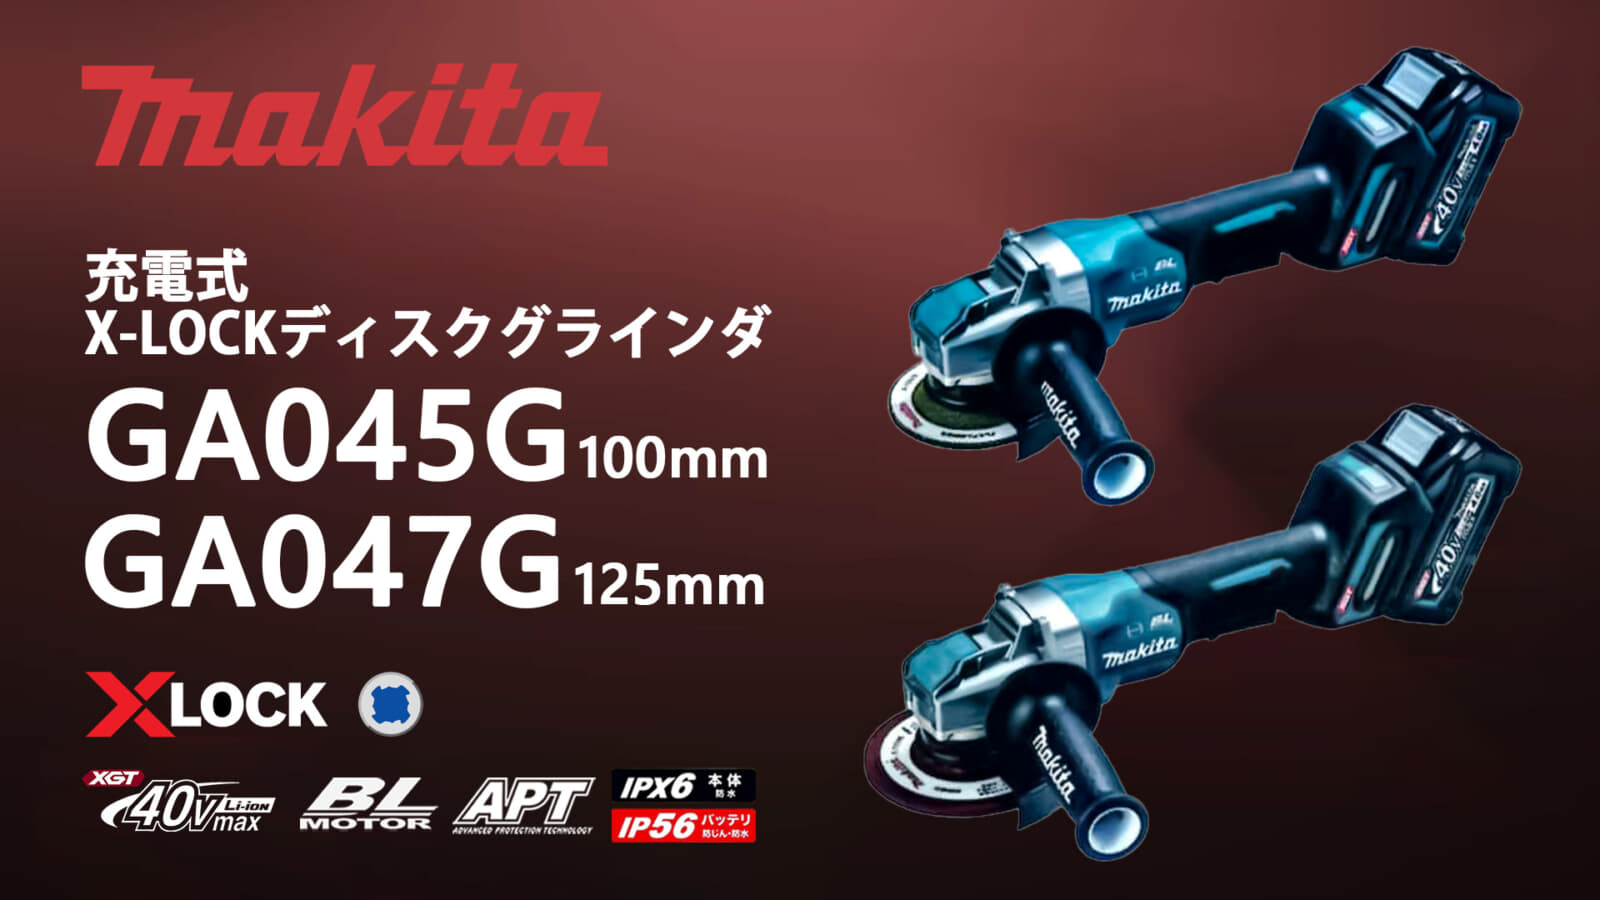 マキタ GA045G/GA047G 充電式グラインダを発売、X-LOCKが40Vmaxシリーズで登場